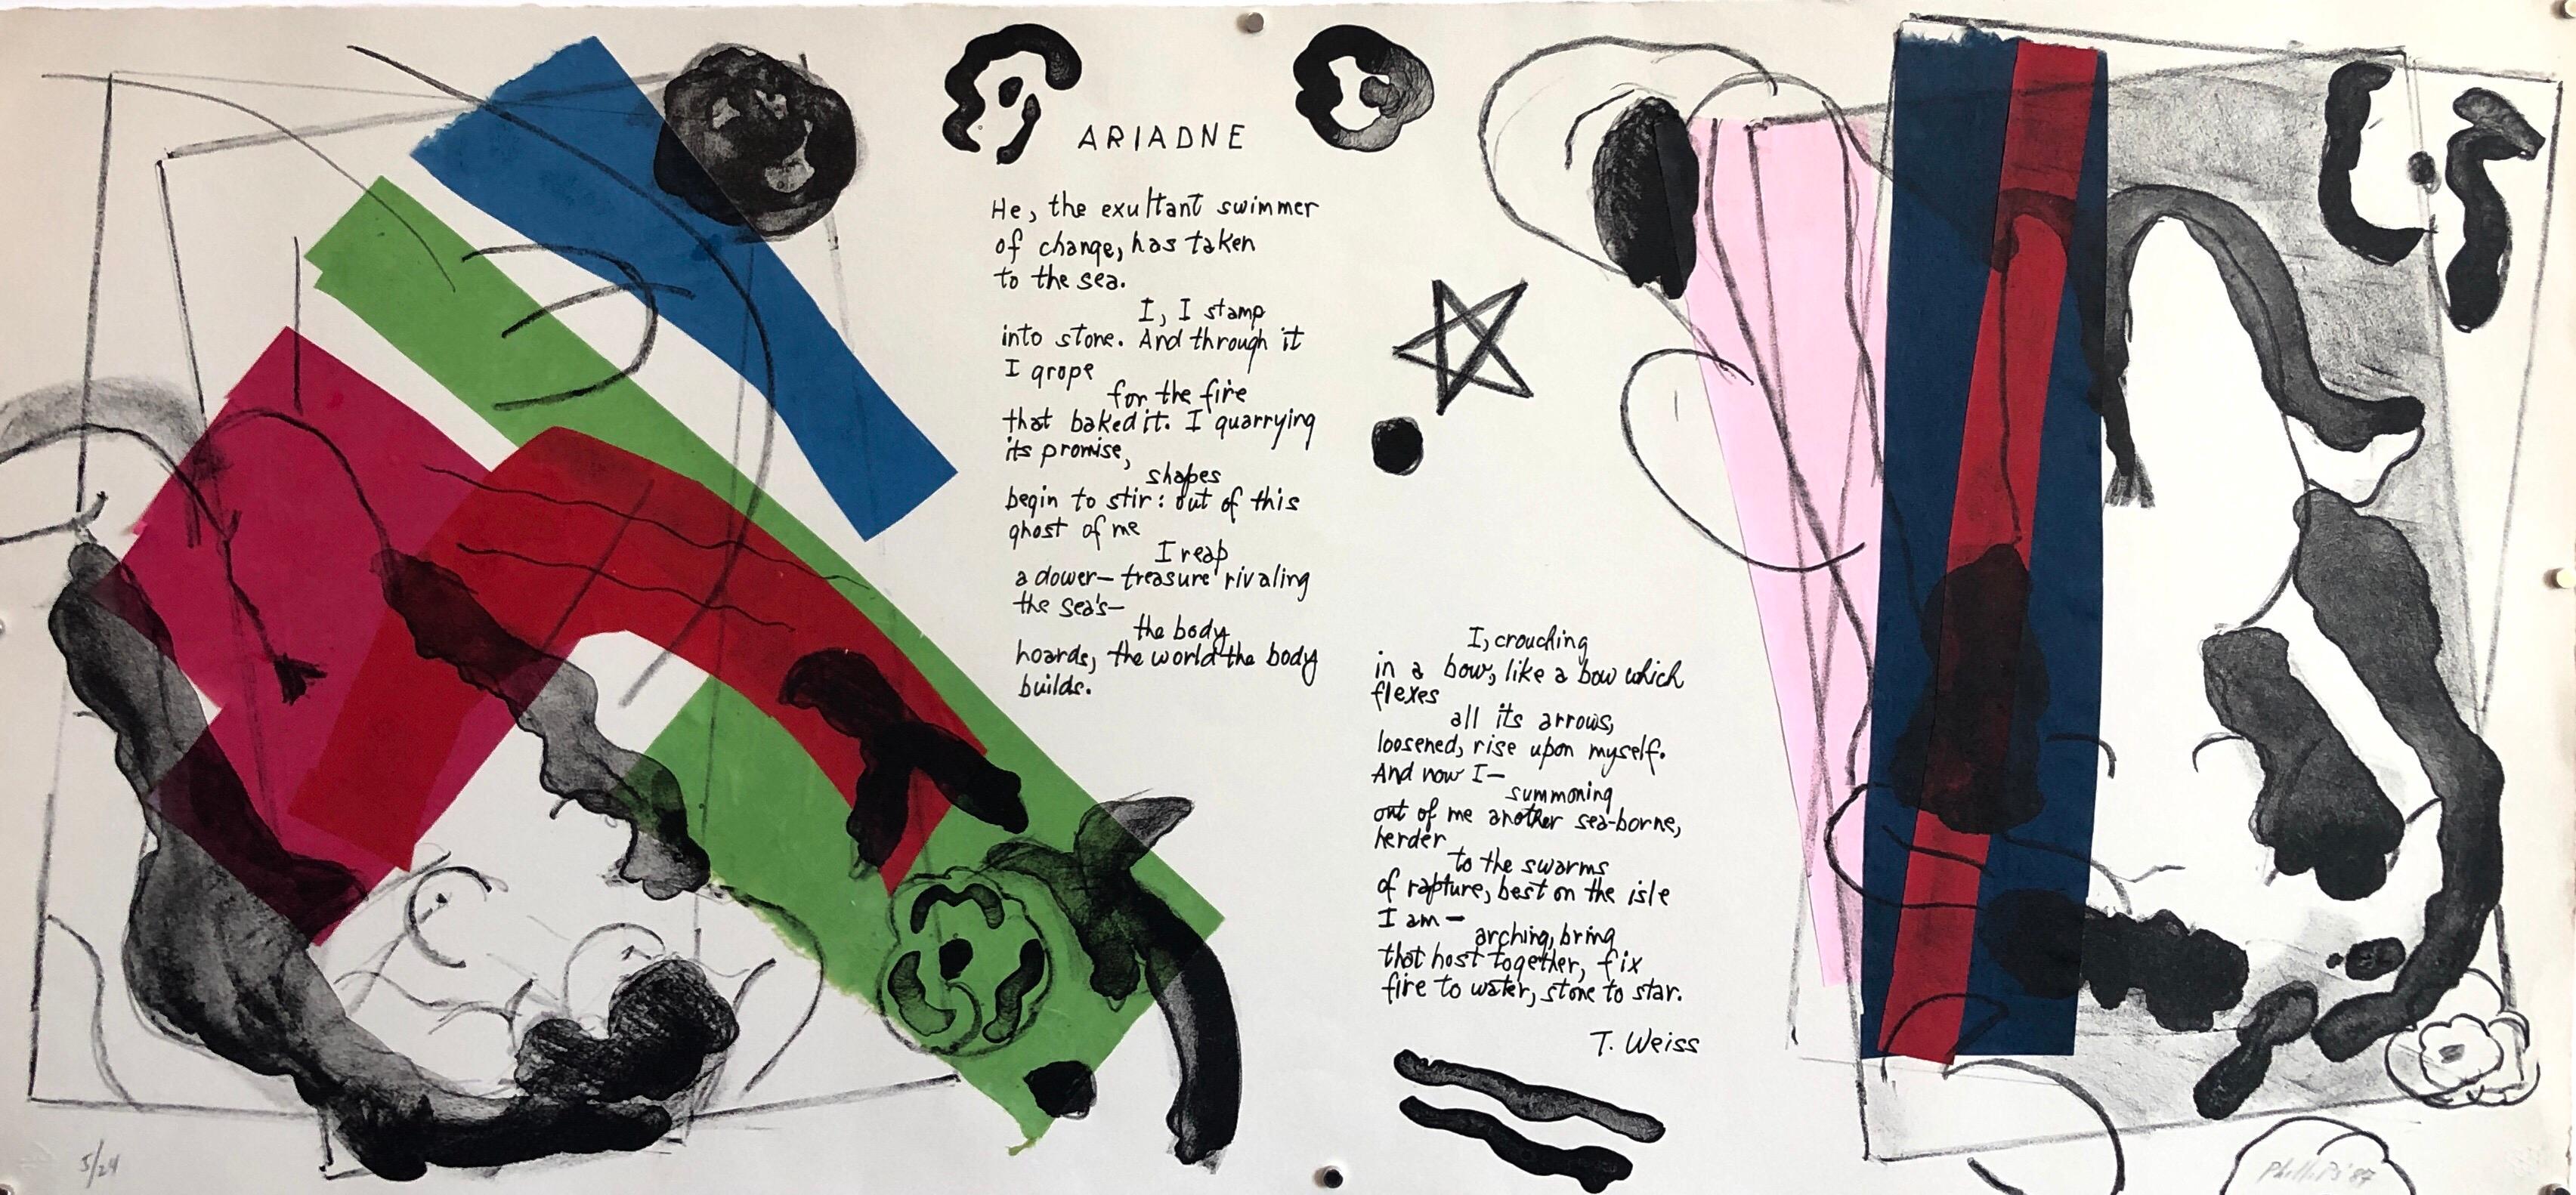 Ariadne, Gedicht, Mixed Media Abstrakter Modernistischer farbenfroher Collage Lithographiedruck – Mixed Media Art von Matt Phillips